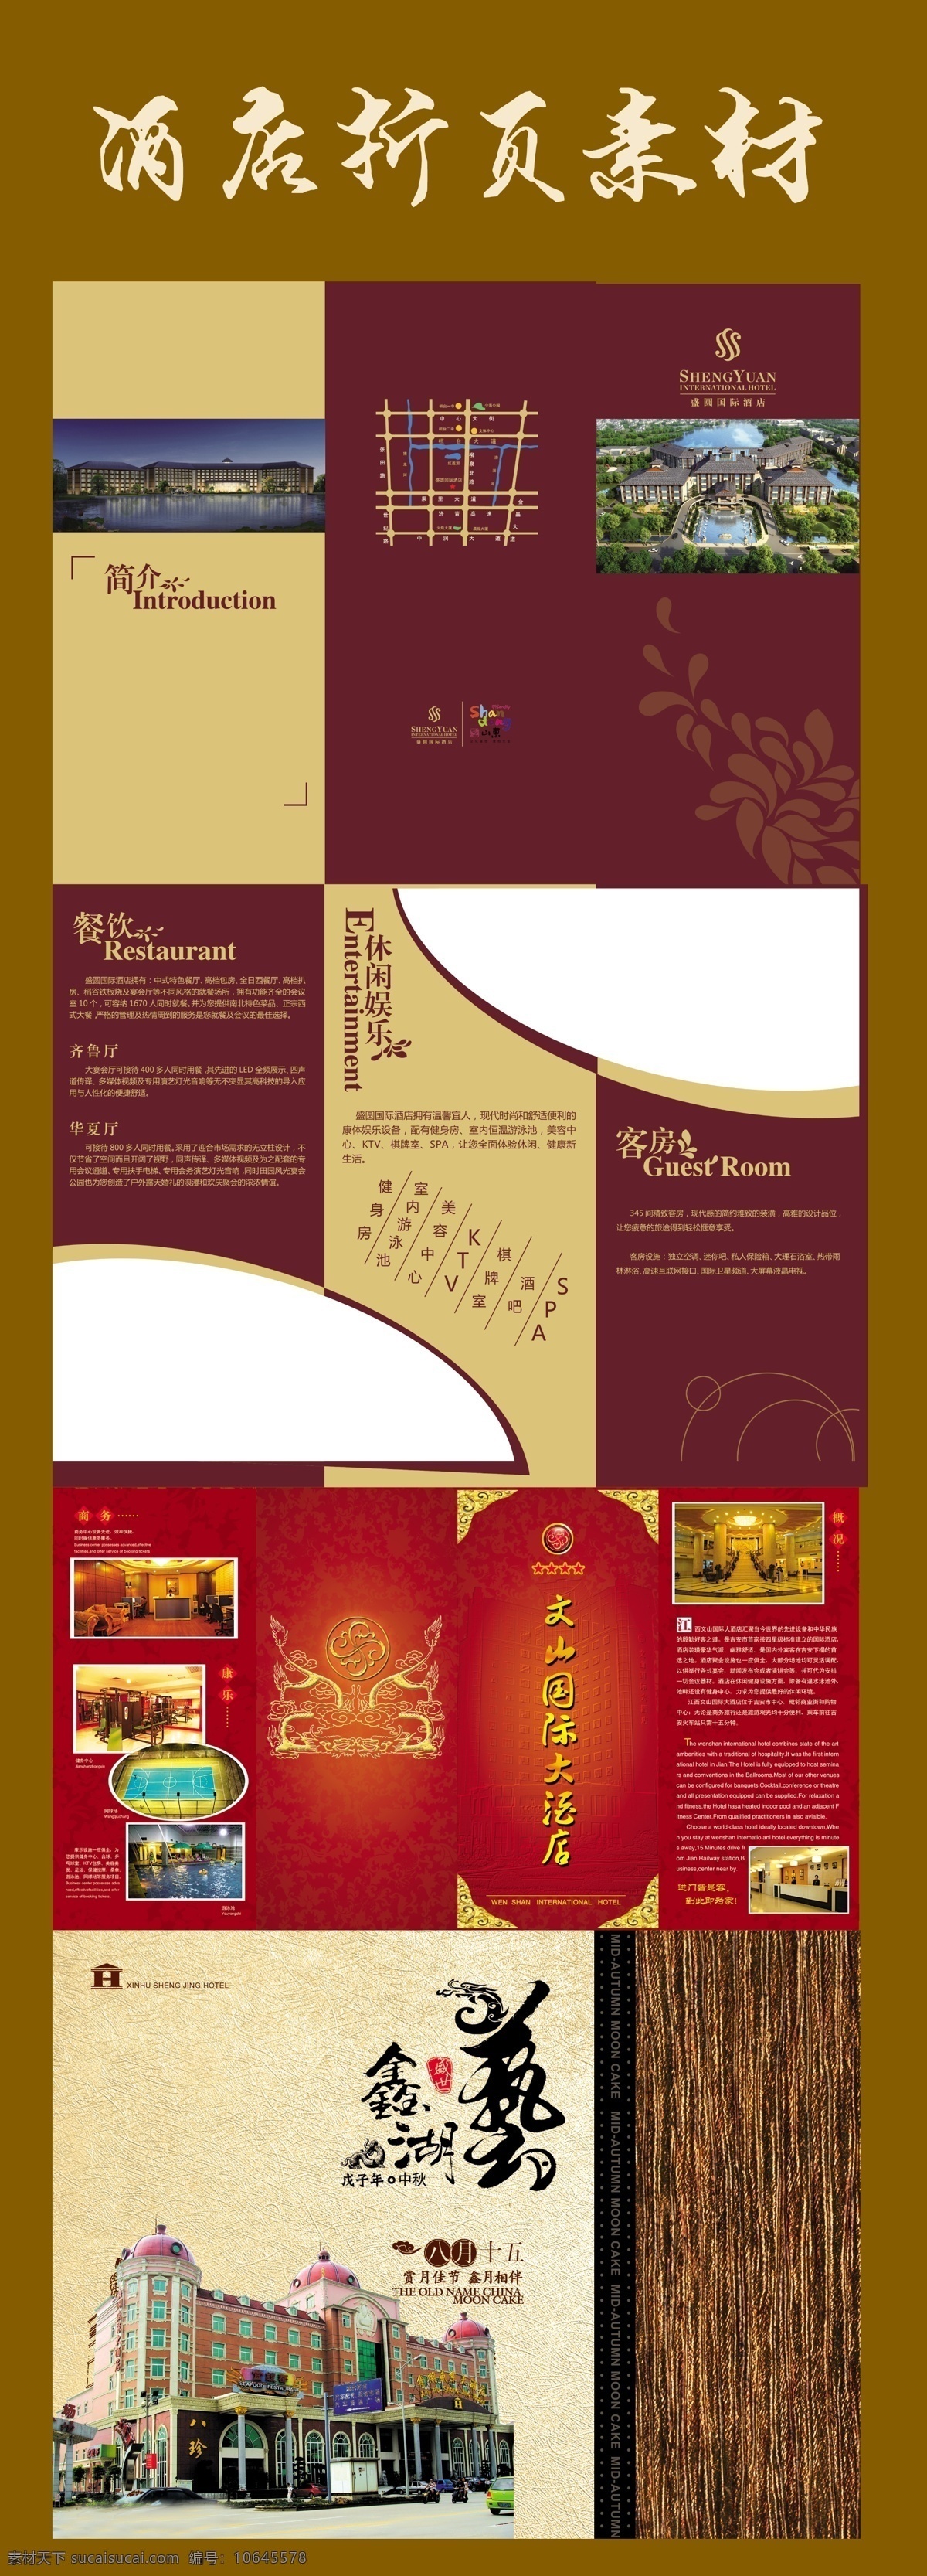 酒店折页 酒店素材 复古风格 源文件 折页 海报 广告海报素材